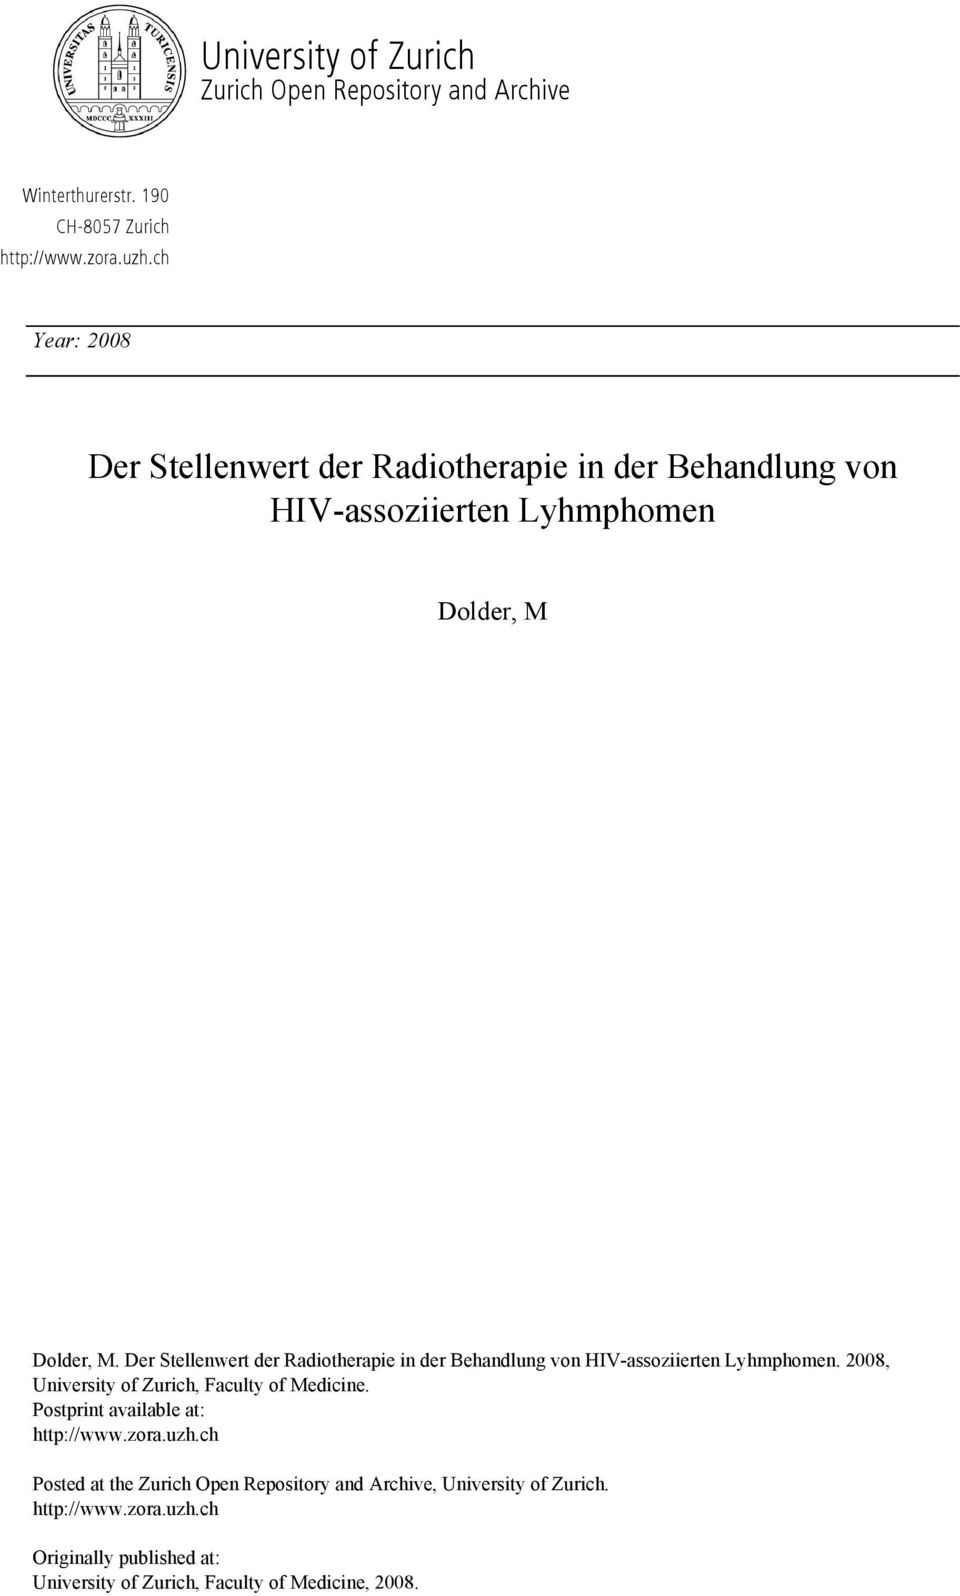 Der Stellenwert der Radiotherapie in der Behandlung von HIV-assoziierten Lyhmphomen. 2008, University of Zurich, Faculty of Medicine.